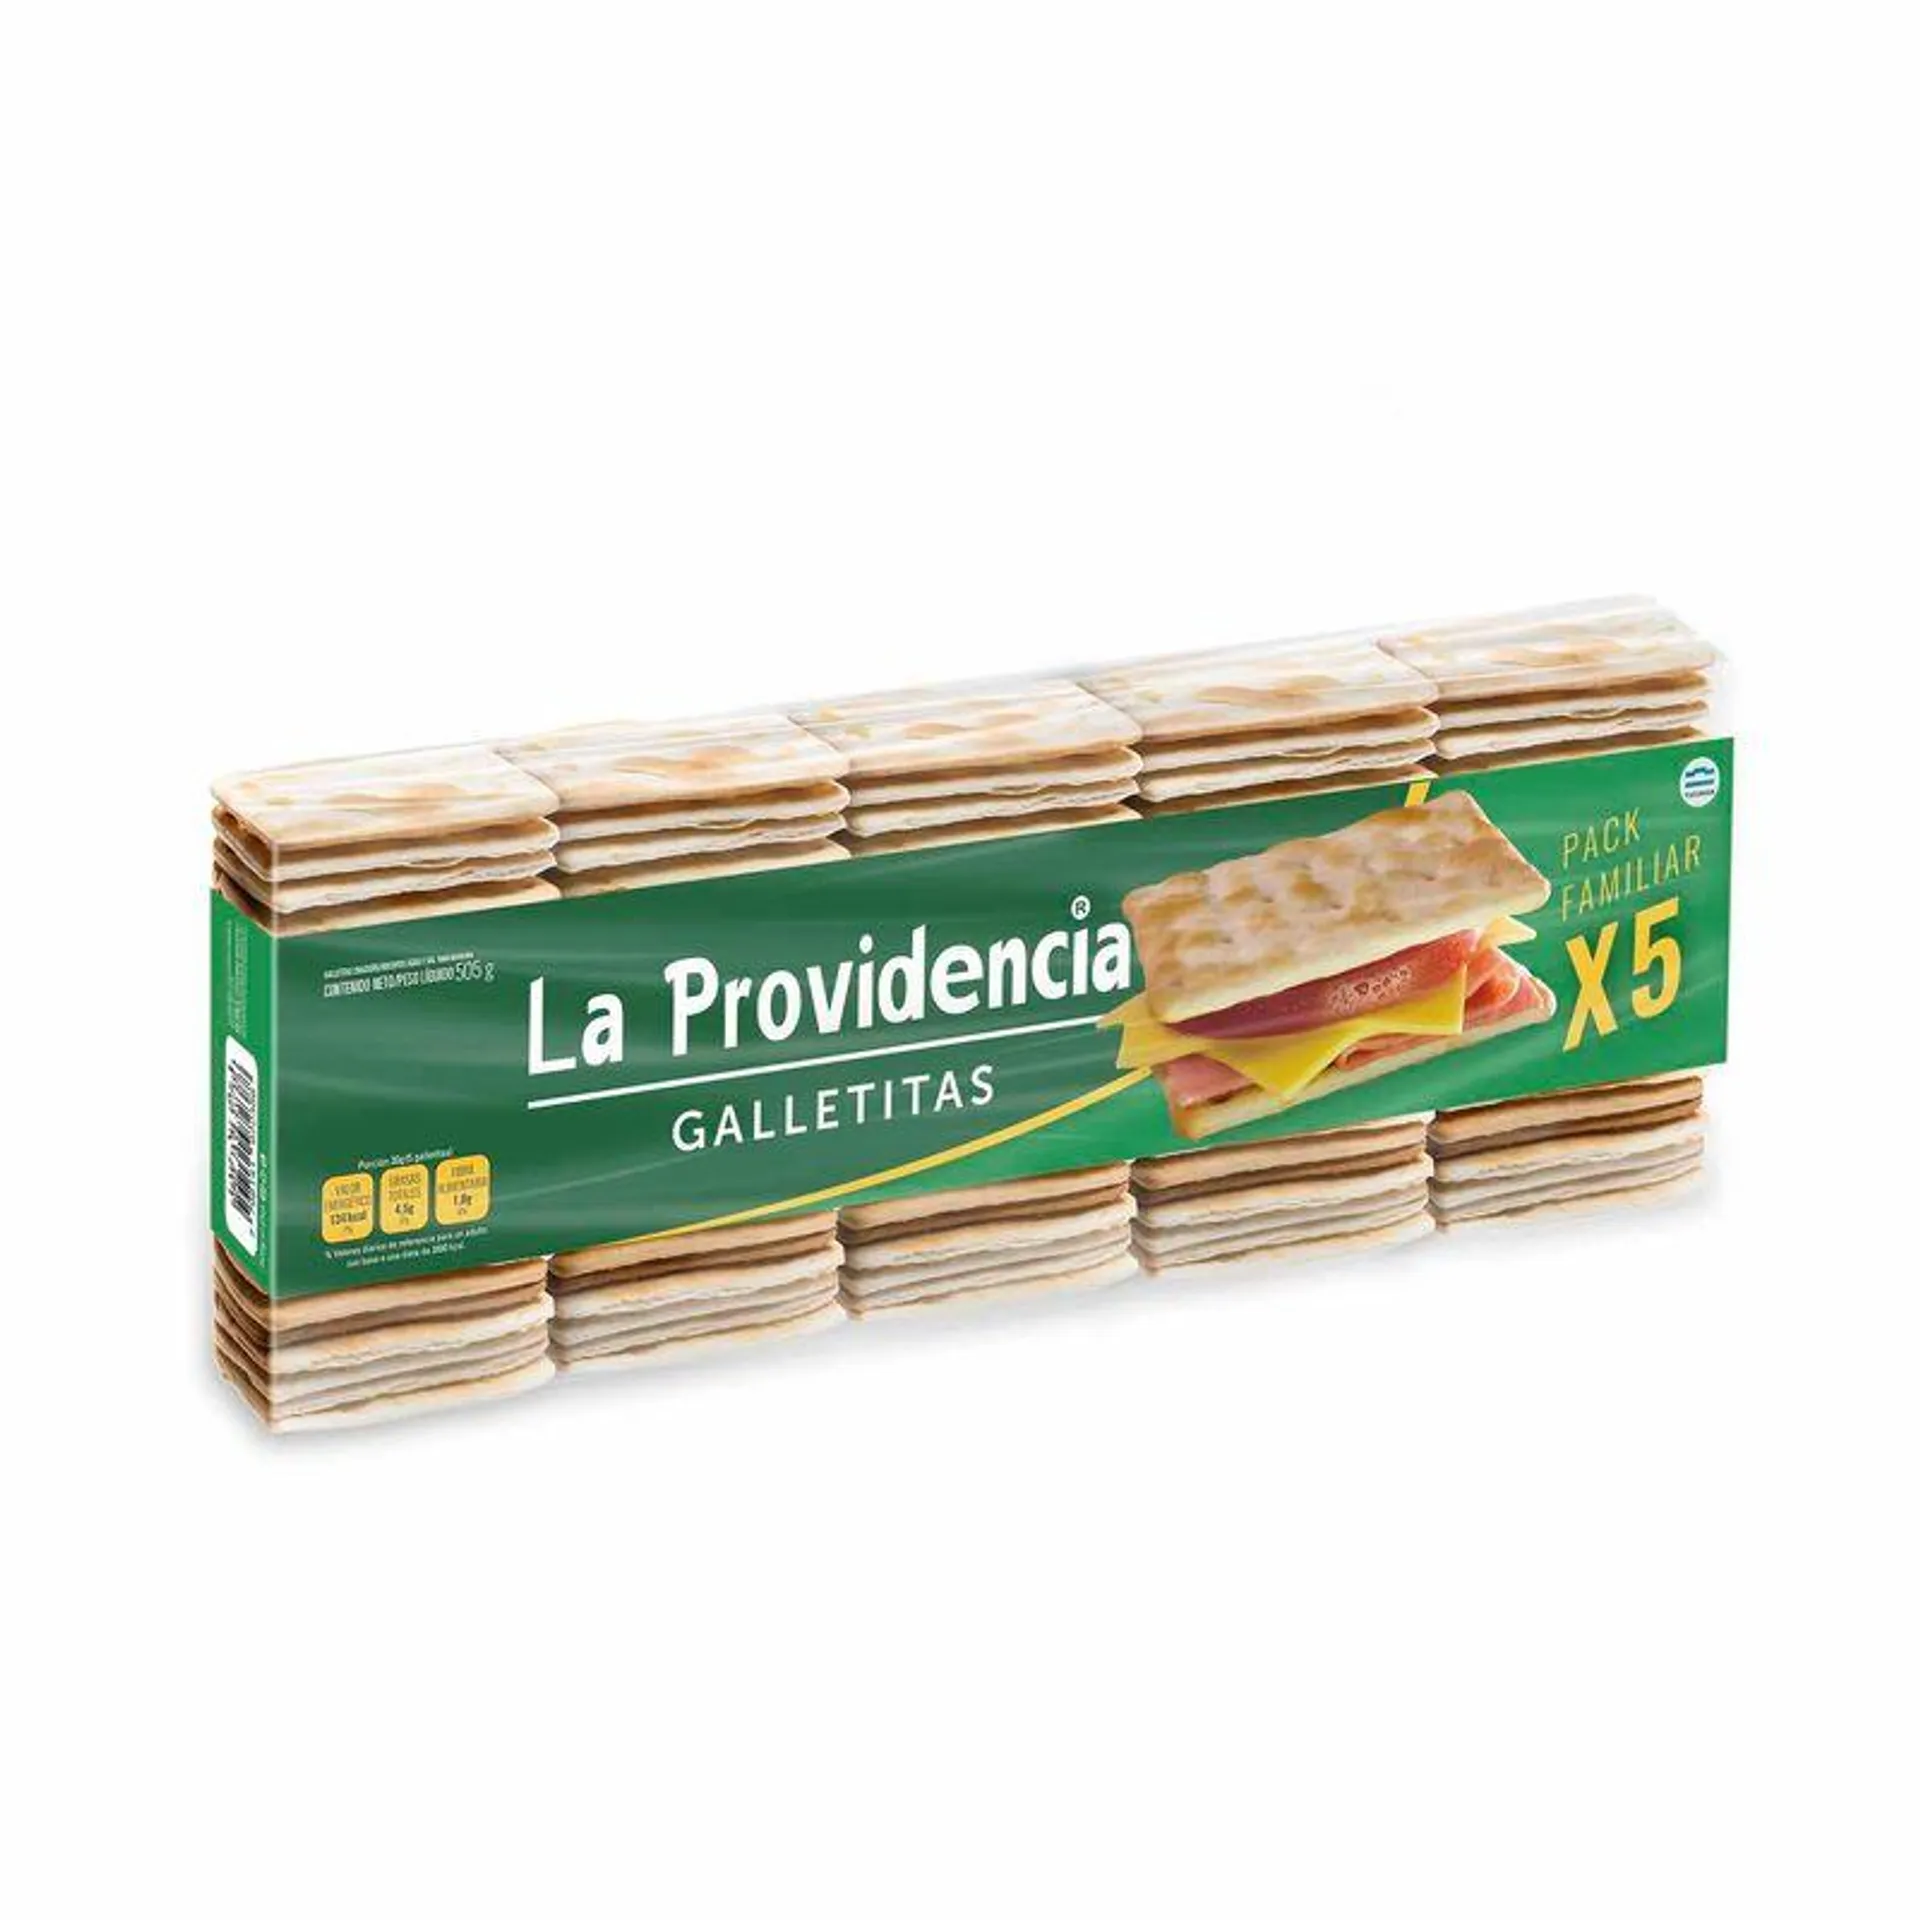 Galletitas crackers La Providencia 505 g.